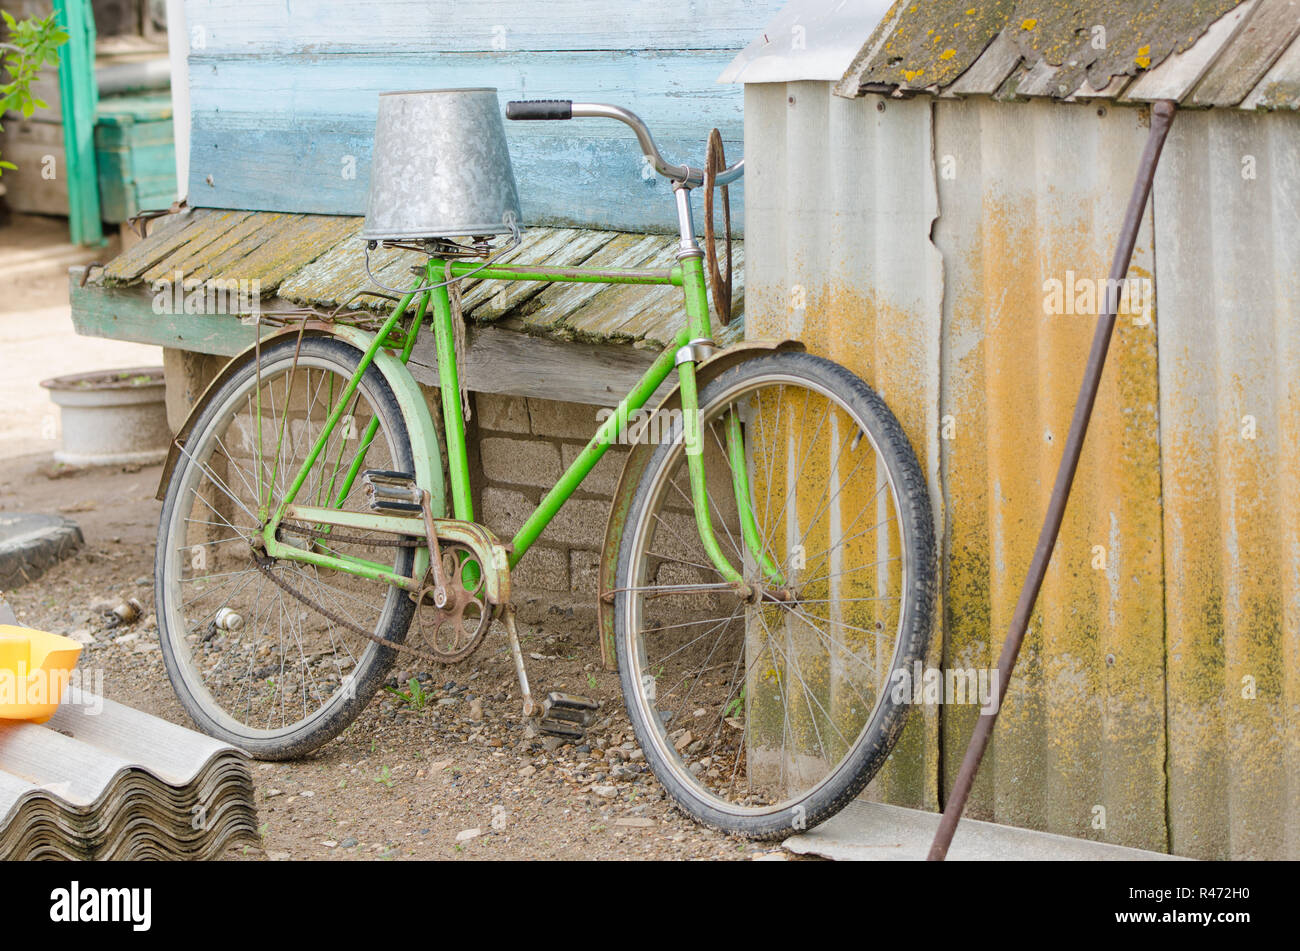 Vecchia bicicletta con una benna sulla sella Foto Stock